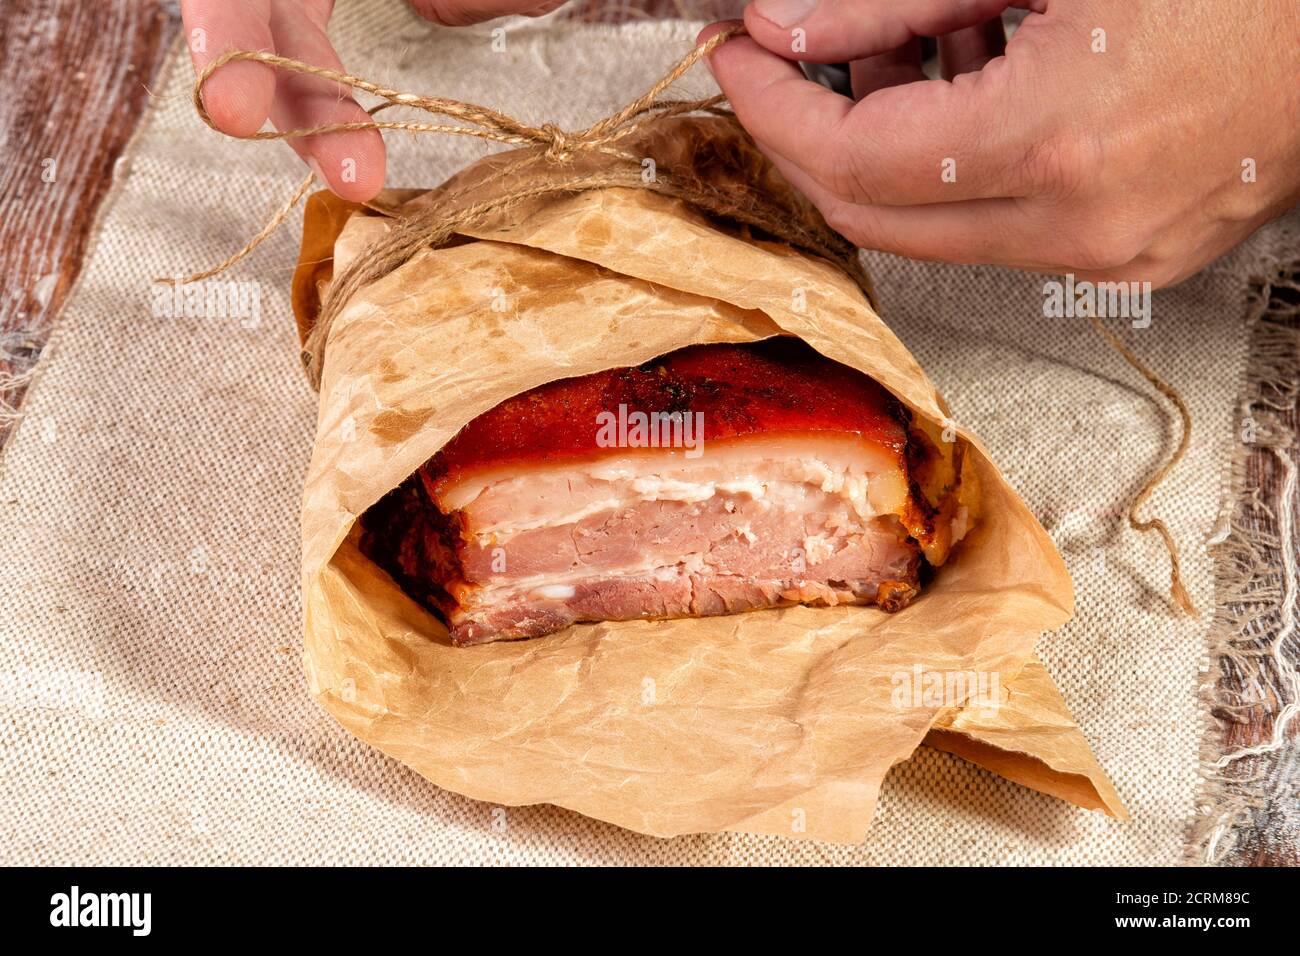 Geräuchertes Fleisch in Geschenkpapier eingewickelt und mit Garn gebunden  Stockfotografie - Alamy